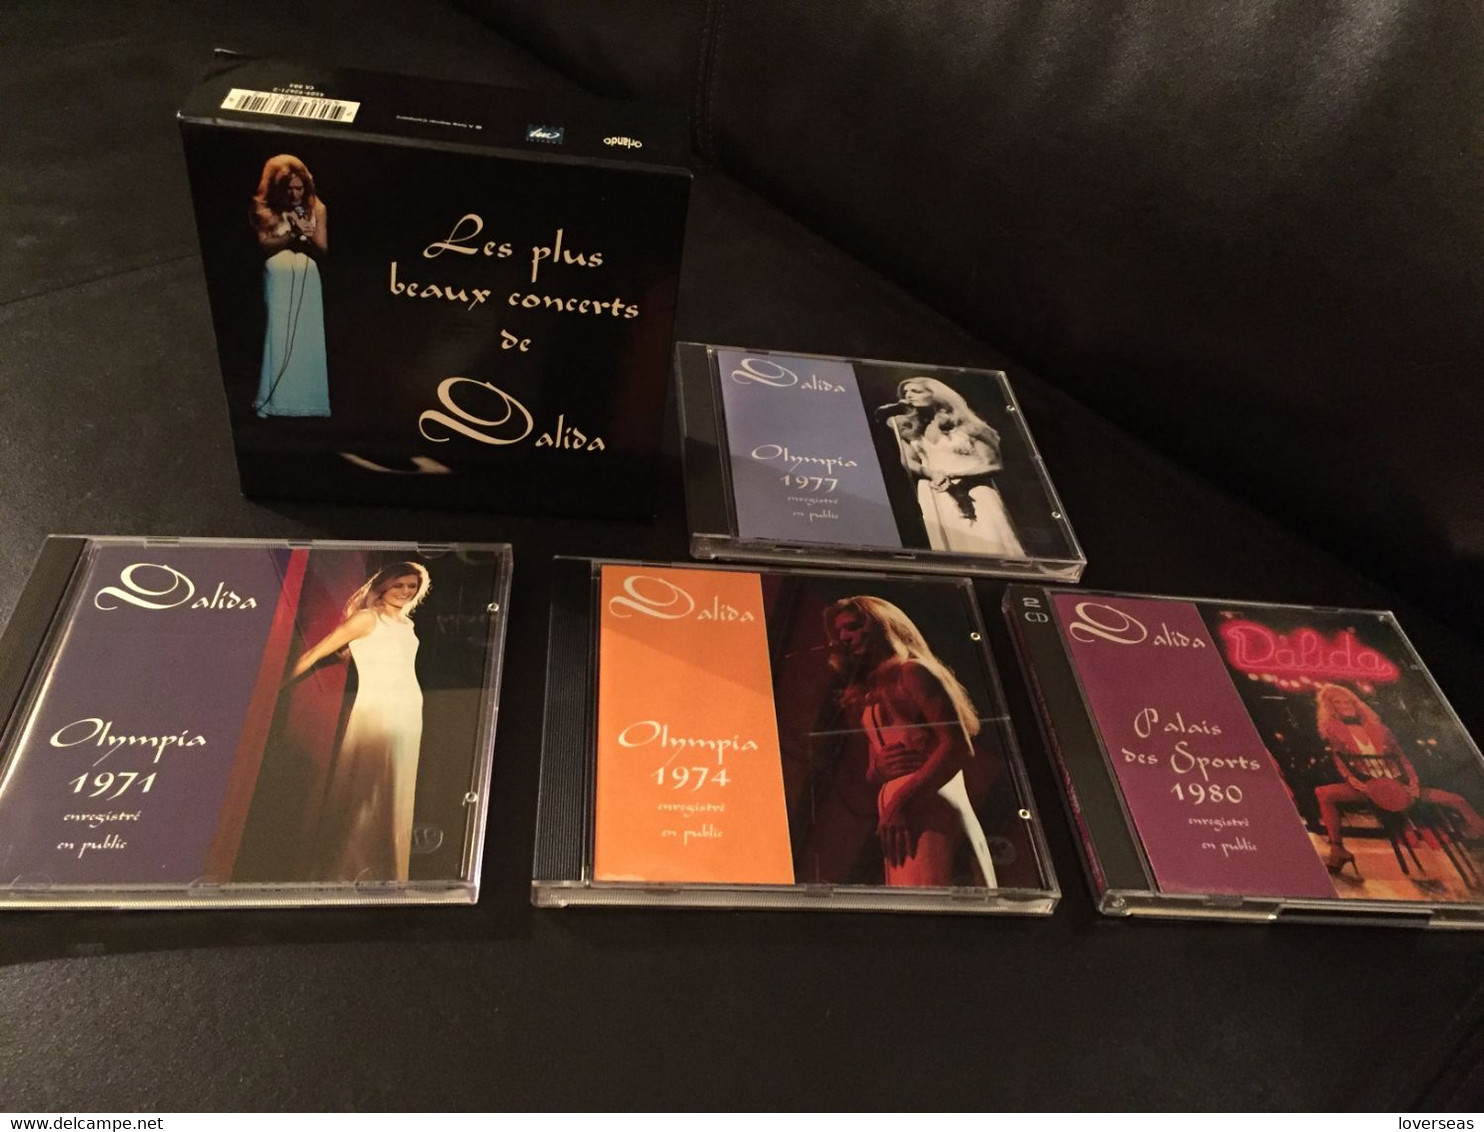 Les Plus Beaux Concerts De Dalida Coffret Live 5 CD 1993 - Collector's Editions